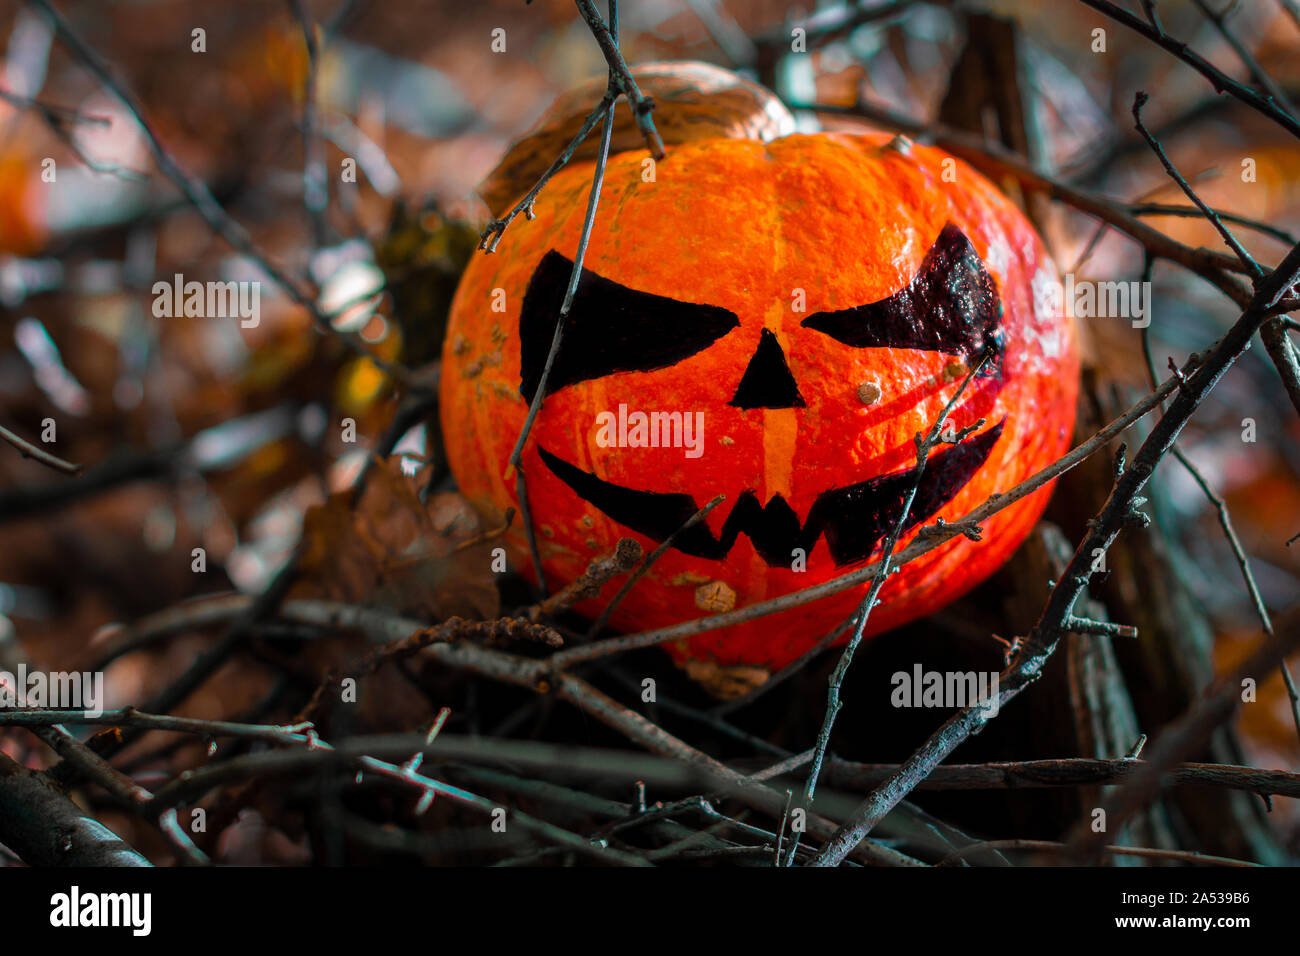 Calabaza de Halloween en el bosque. Miedo decoraciones con calabaza escalofriante gran sonrisa al fondo de madera Foto de stock